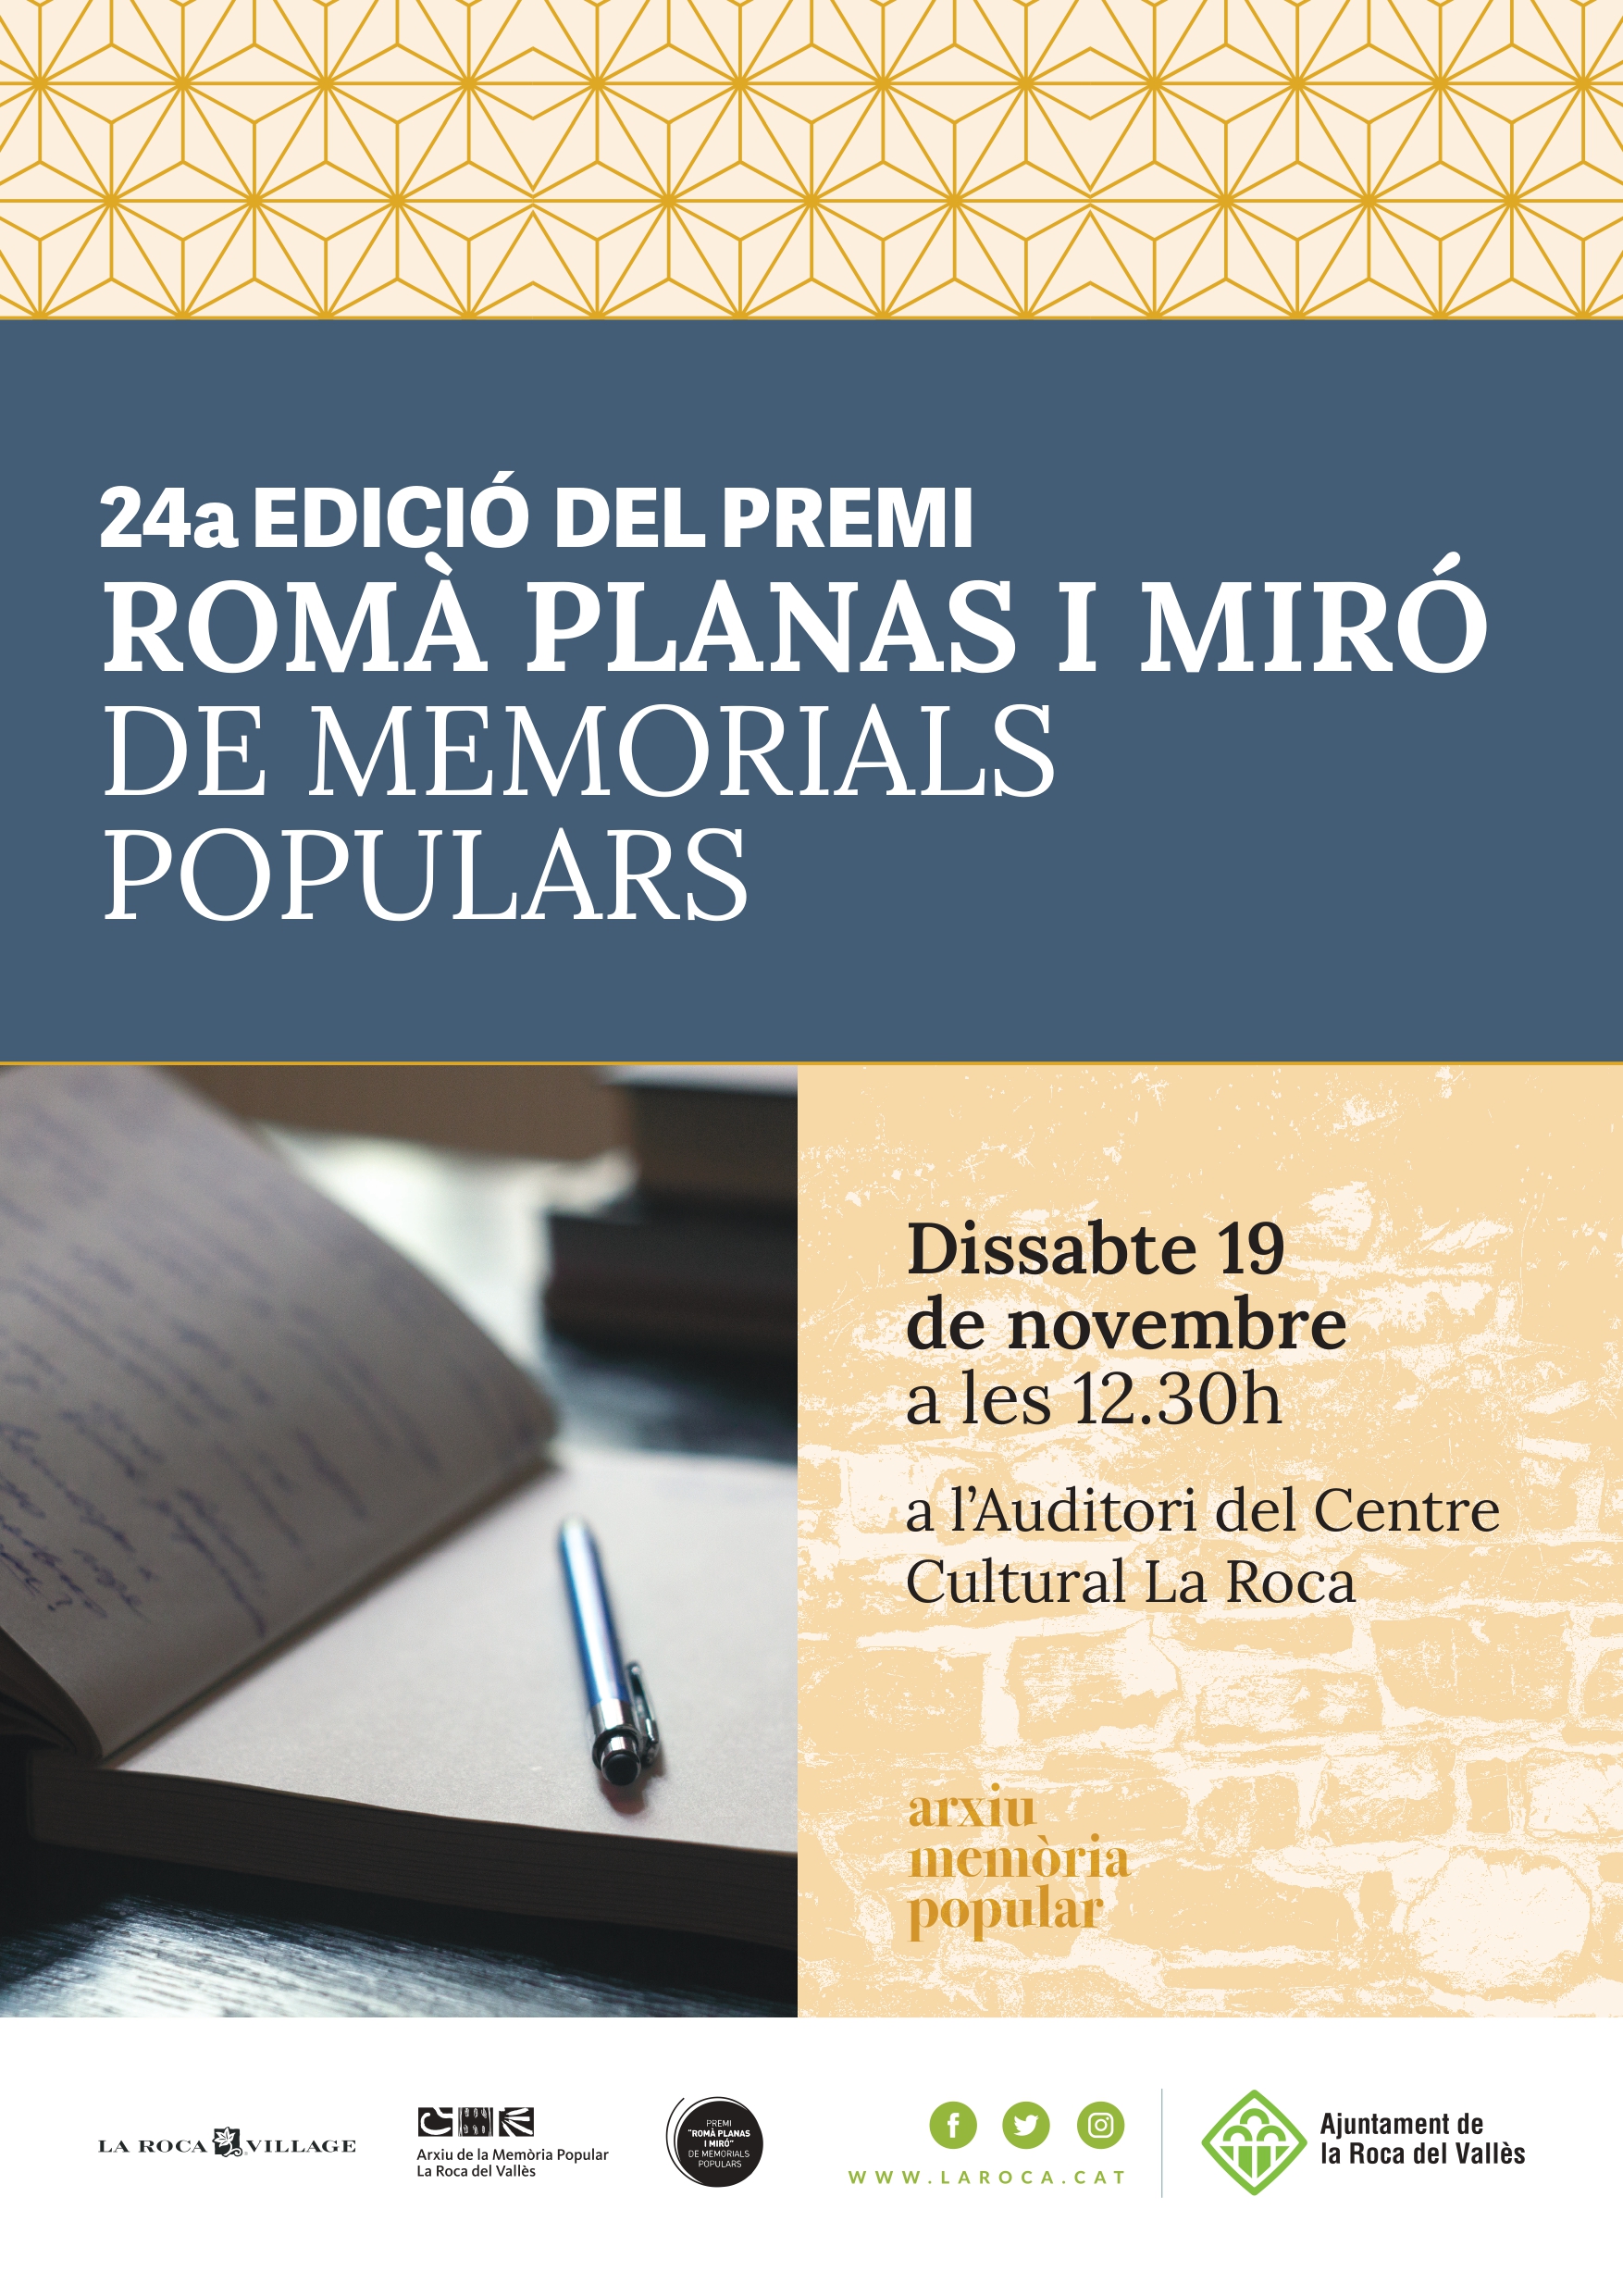 24a edició del premi Romà Planas i Miró de Memorials Populars